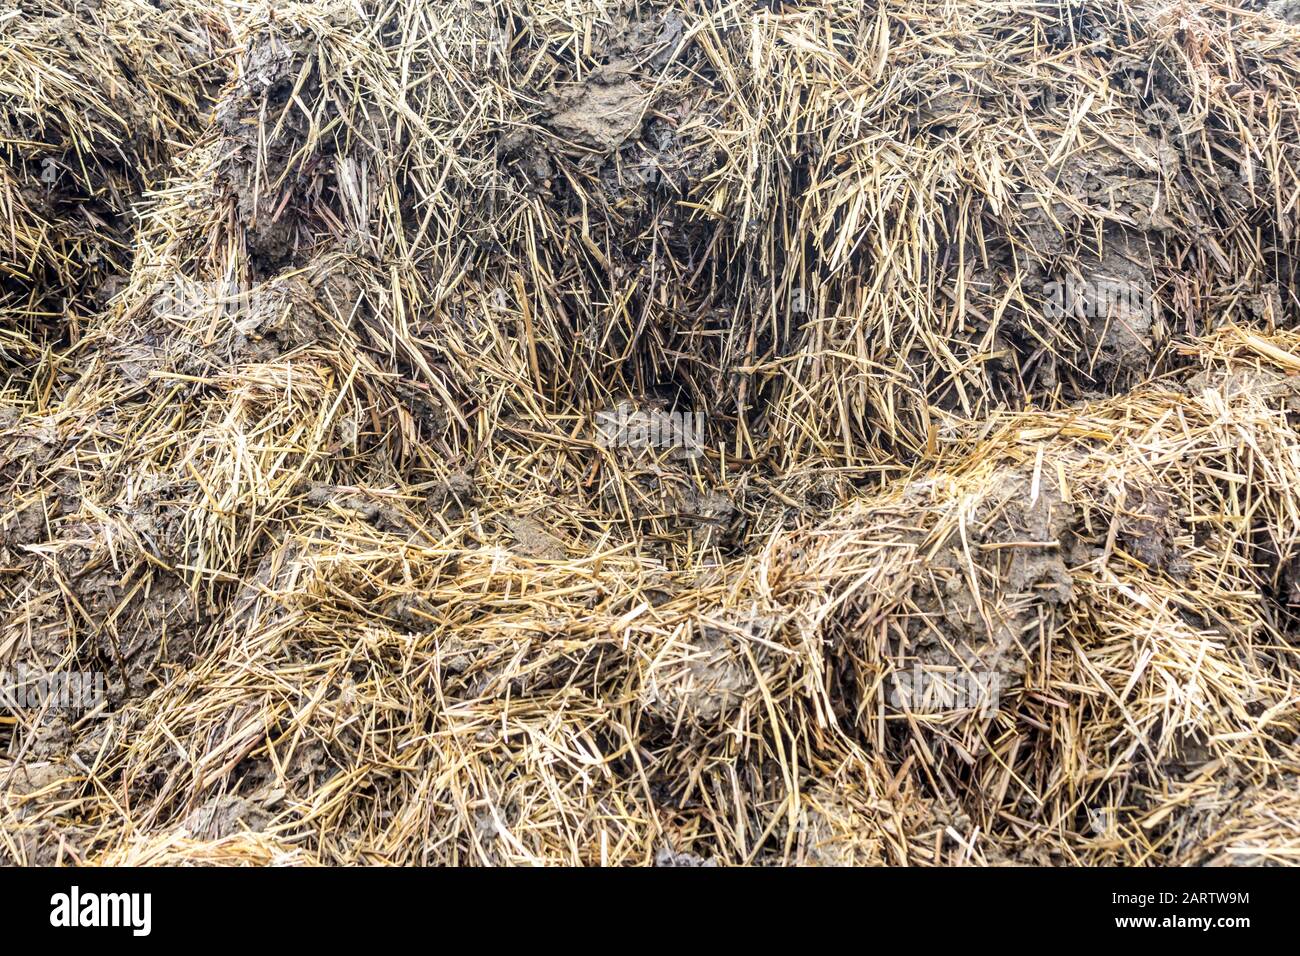 Le fumier mélangé à de la paille est préparé pour fertiliser les champs. Gros plan . Ferme laitière. Podlasie, Pologne. Banque D'Images